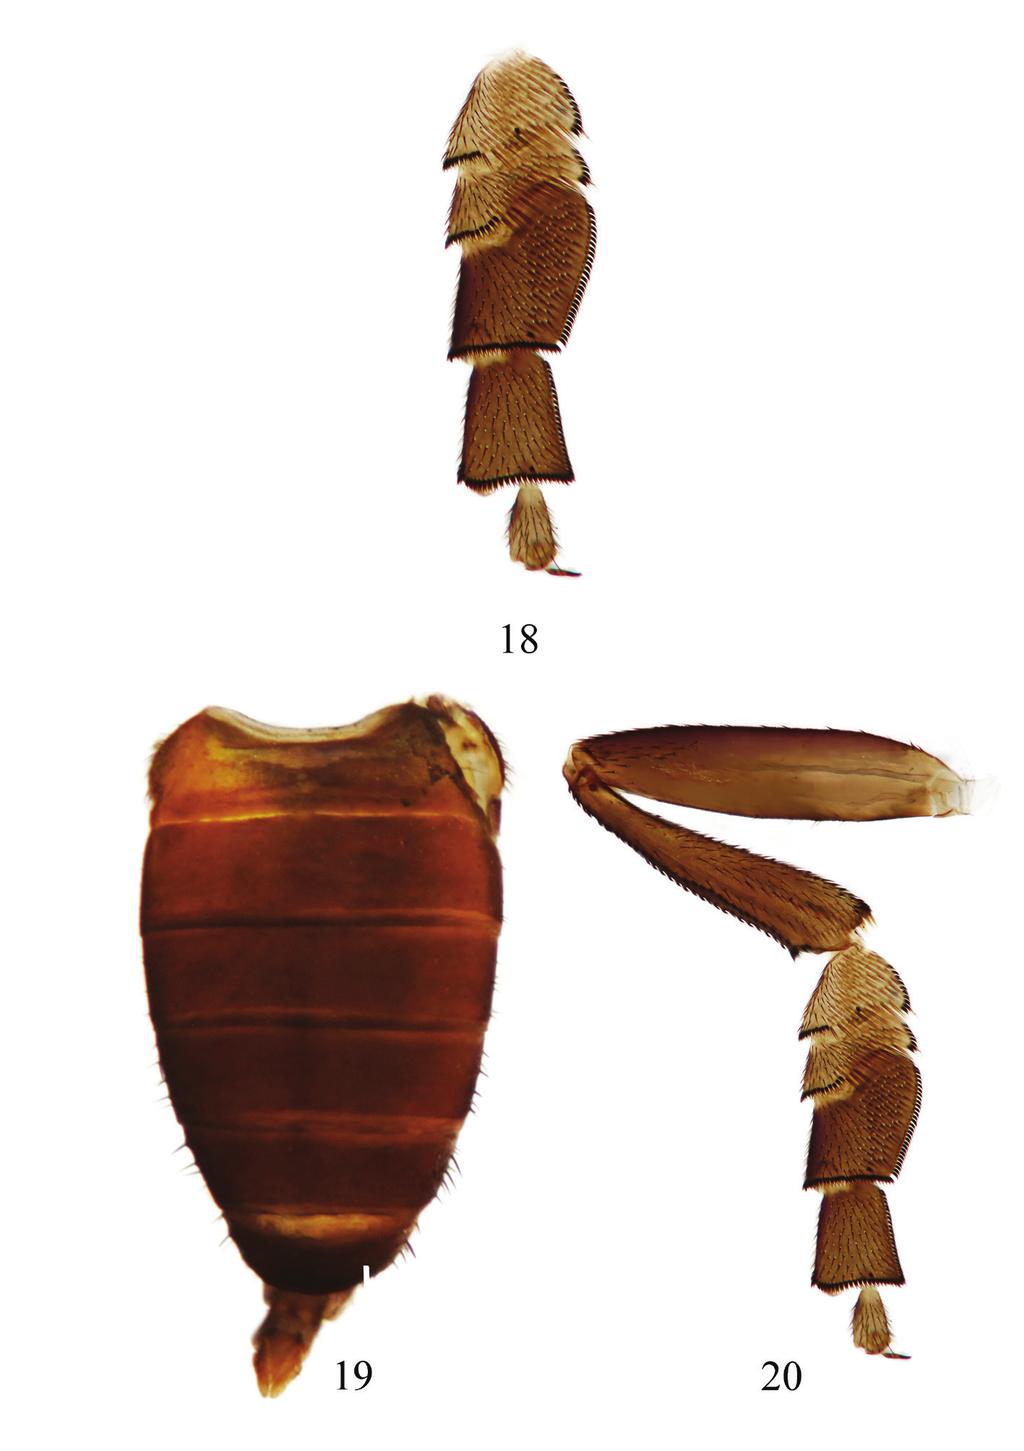 han & yang 66 Figures 18-20. Lindneromyia laosensis sp. nov. (female). 18. hind tarsus, anterior view; 19.